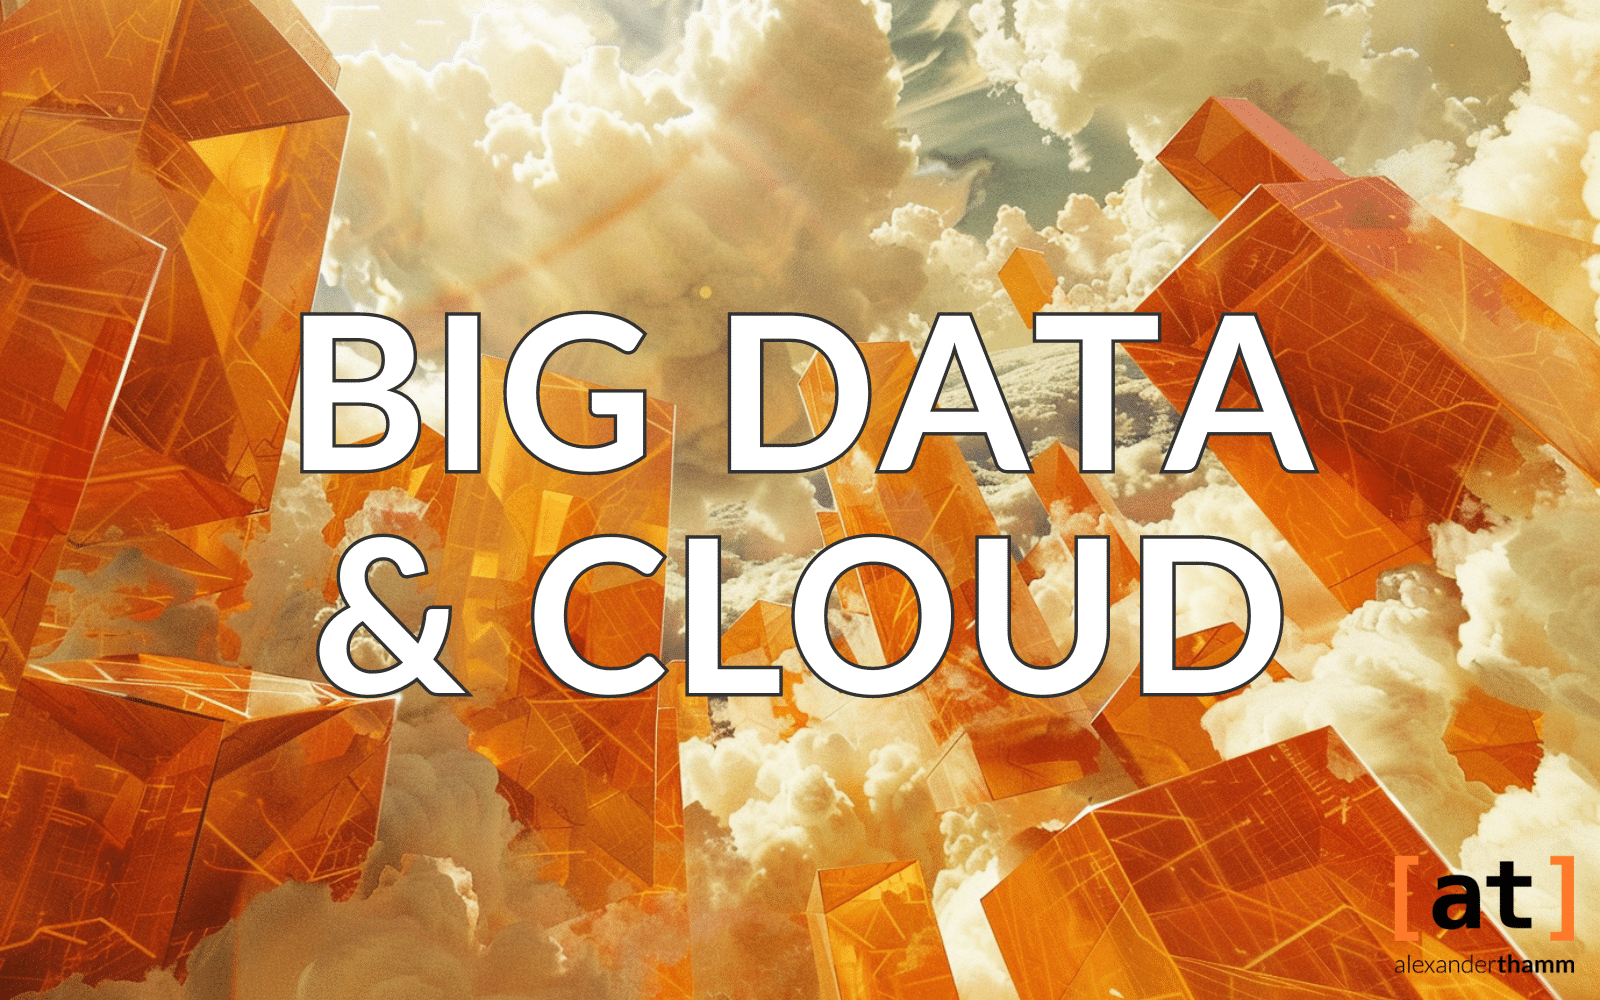 Big Data und Cloud Computing, gläserne Wolkenkratzer in einer Landschaft voller Wolken